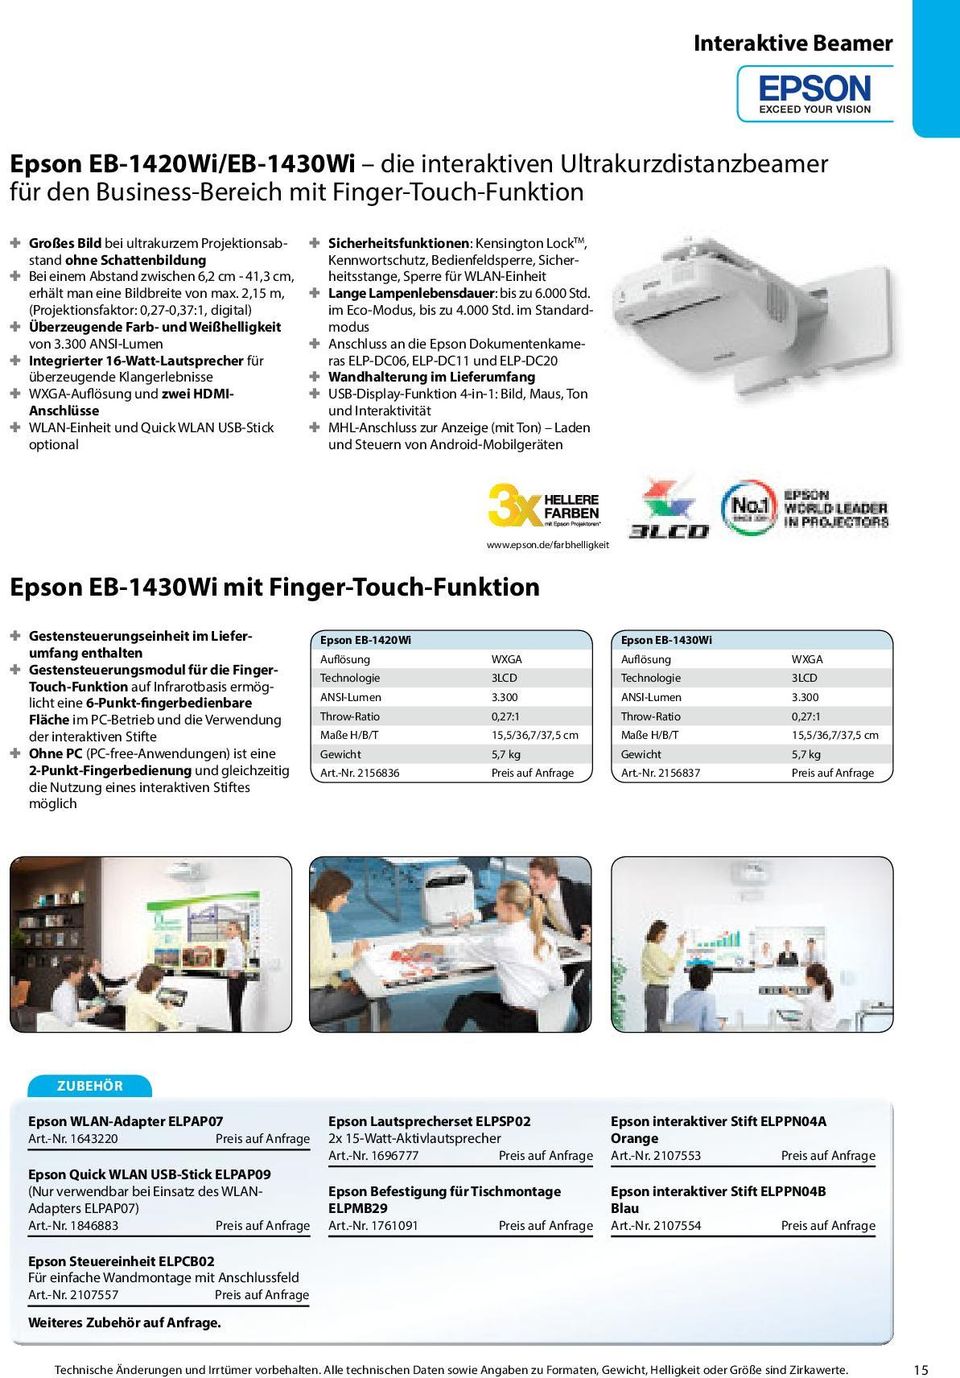 300 ANSI-Lumen Integrierter 16-Watt-Lautsprecher für überzeugende Klangerlebnisse WXGA- und zwei HDMI- Anschlüsse WLAN-Einheit und Quick WLAN USB-Stick optional Sicherheitsfunktionen: Kensington Lock